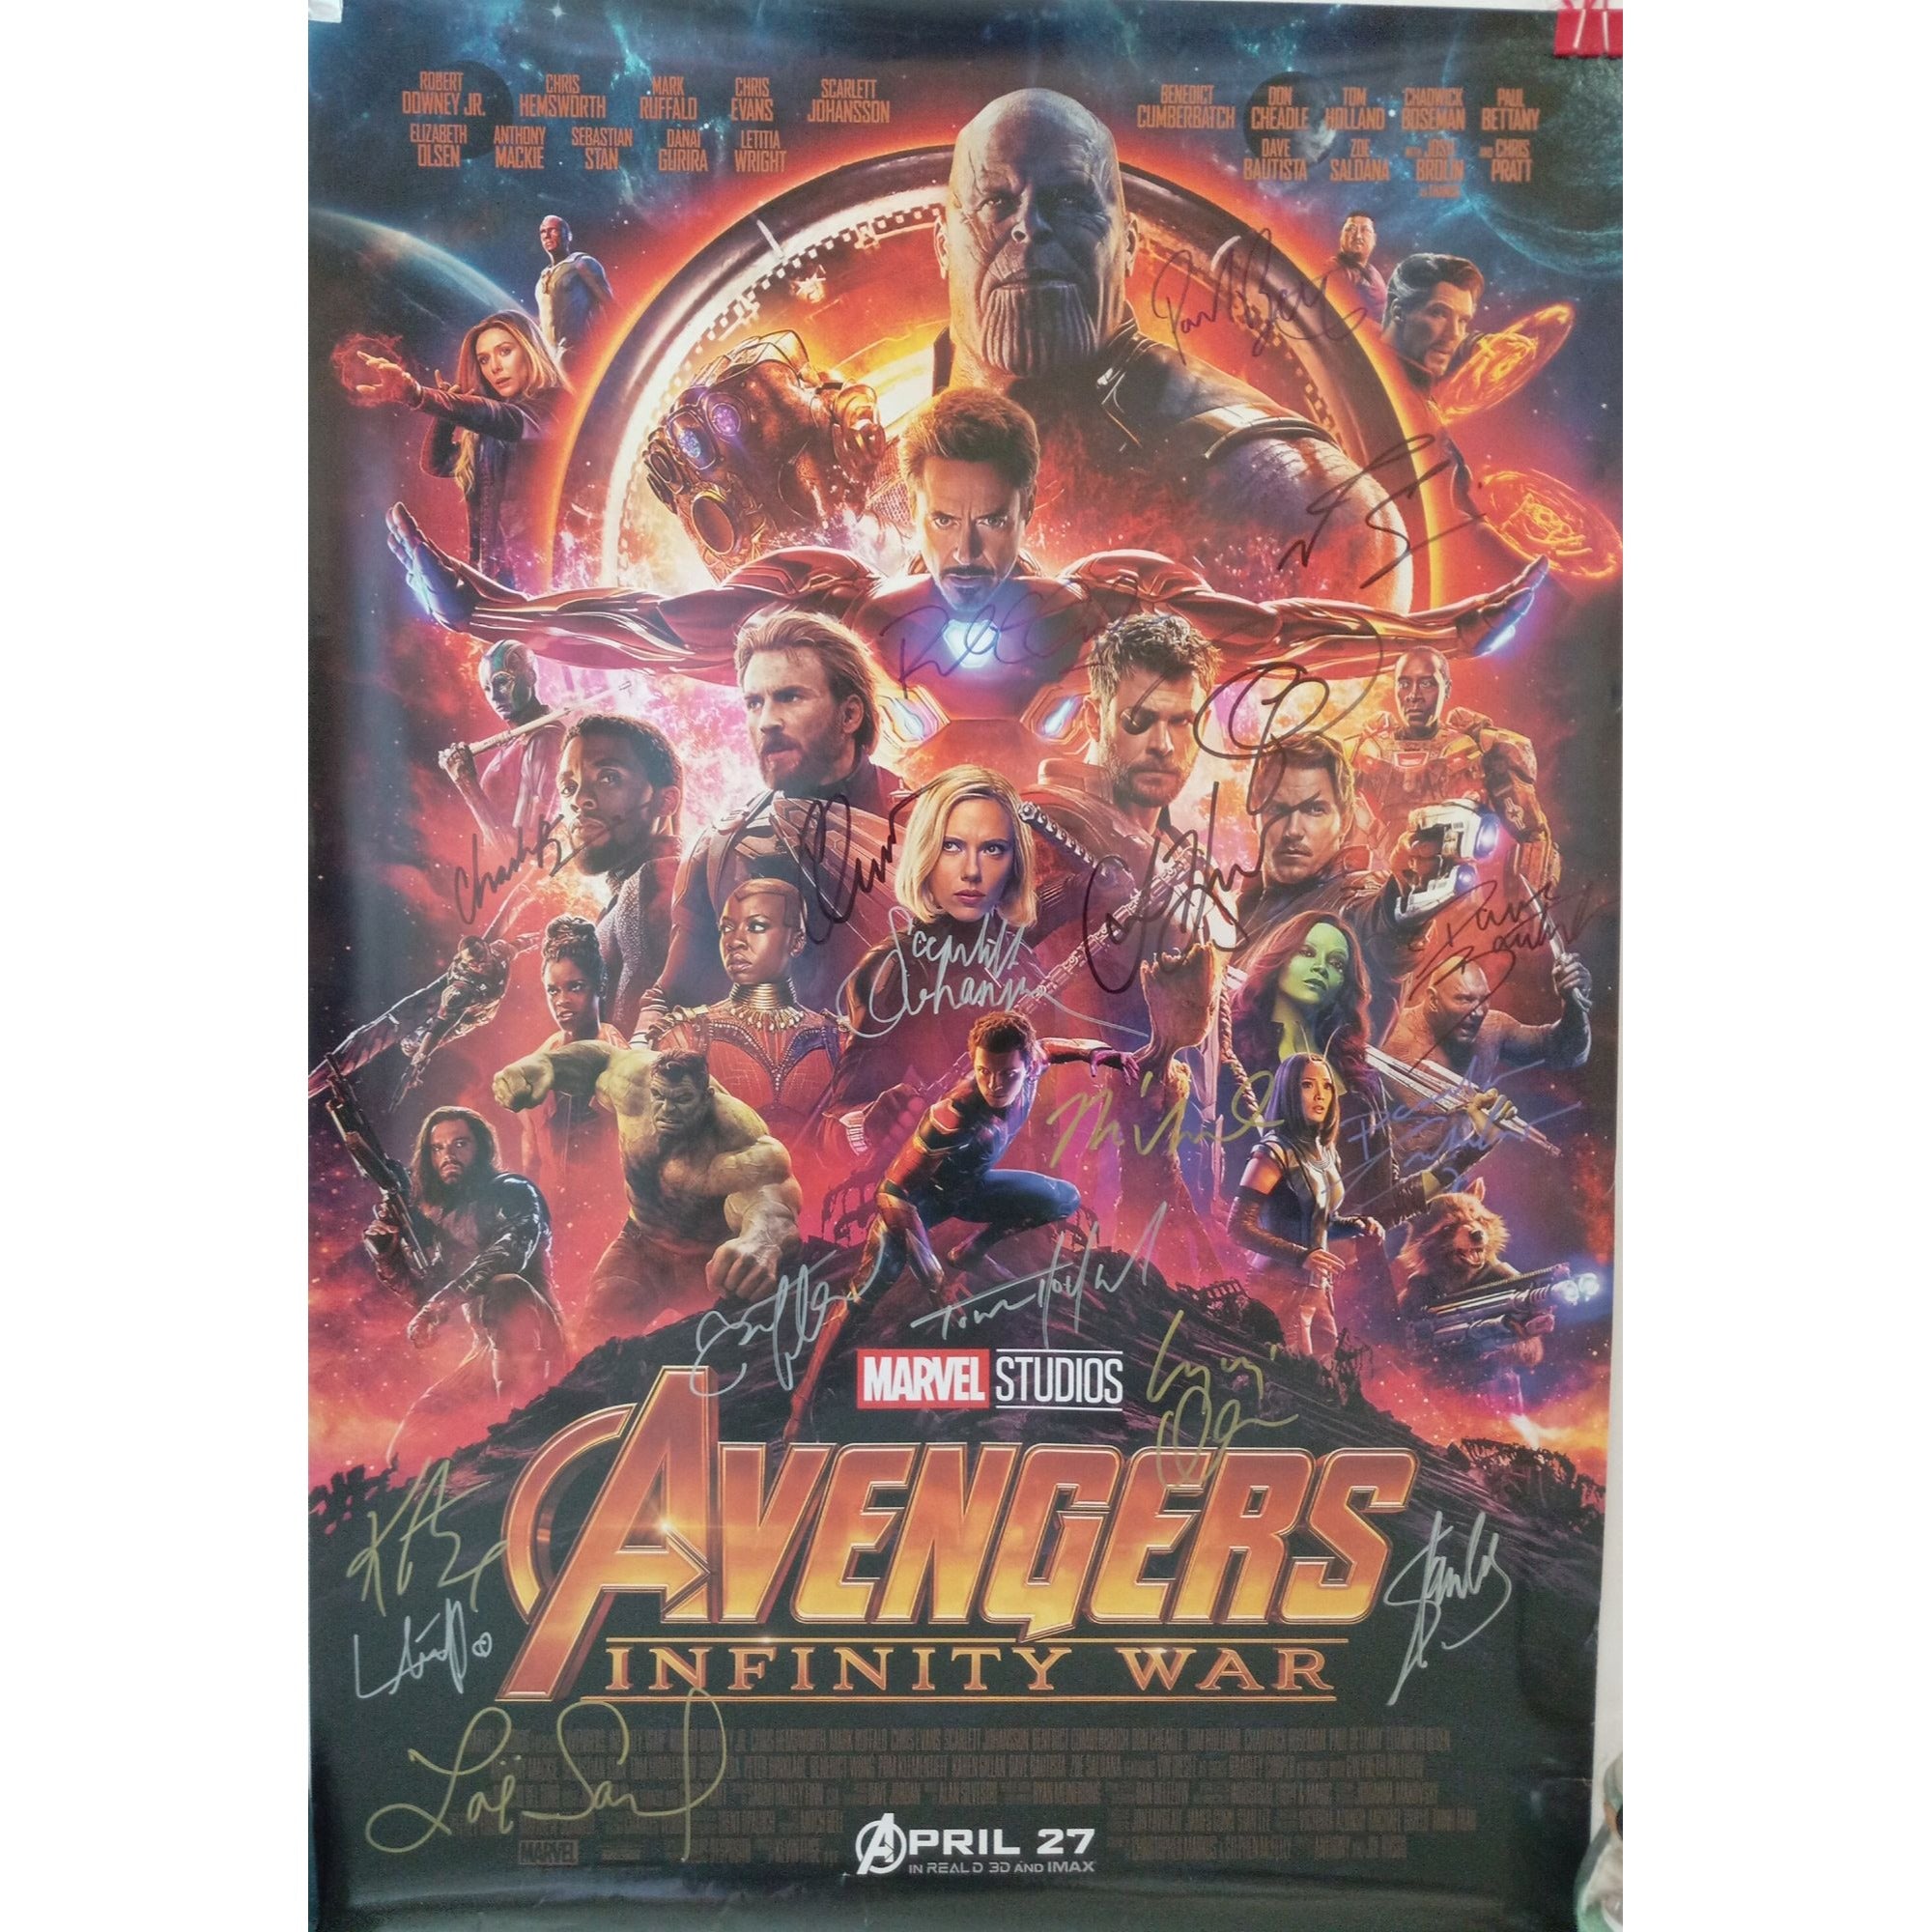 Avengers: Infinity War' - Robert Downey Jr. Shares All Iron Man Poster